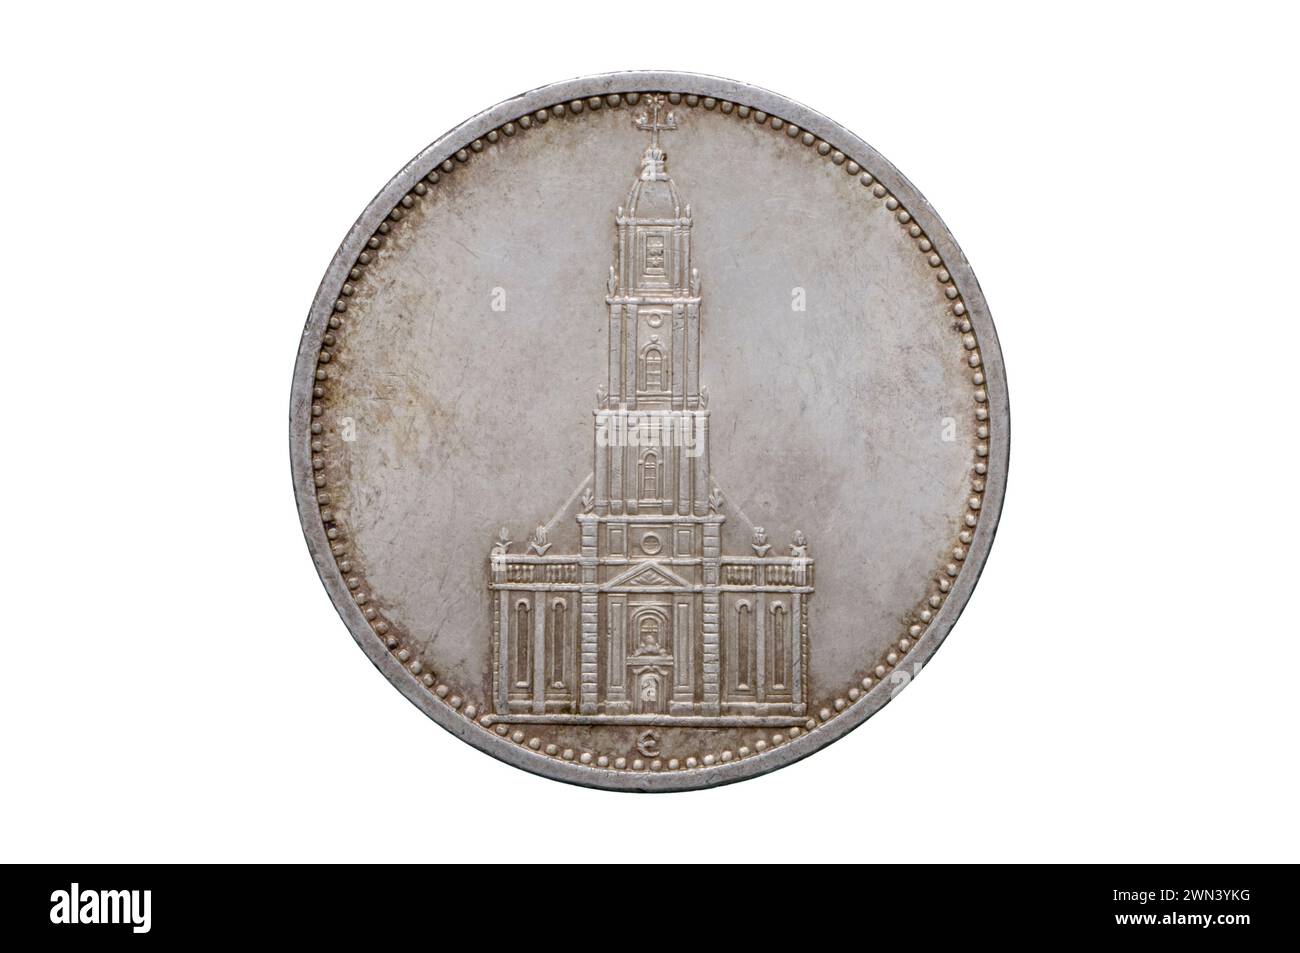 1935 moneta d'argento da 5 Reichsmark Foto Stock